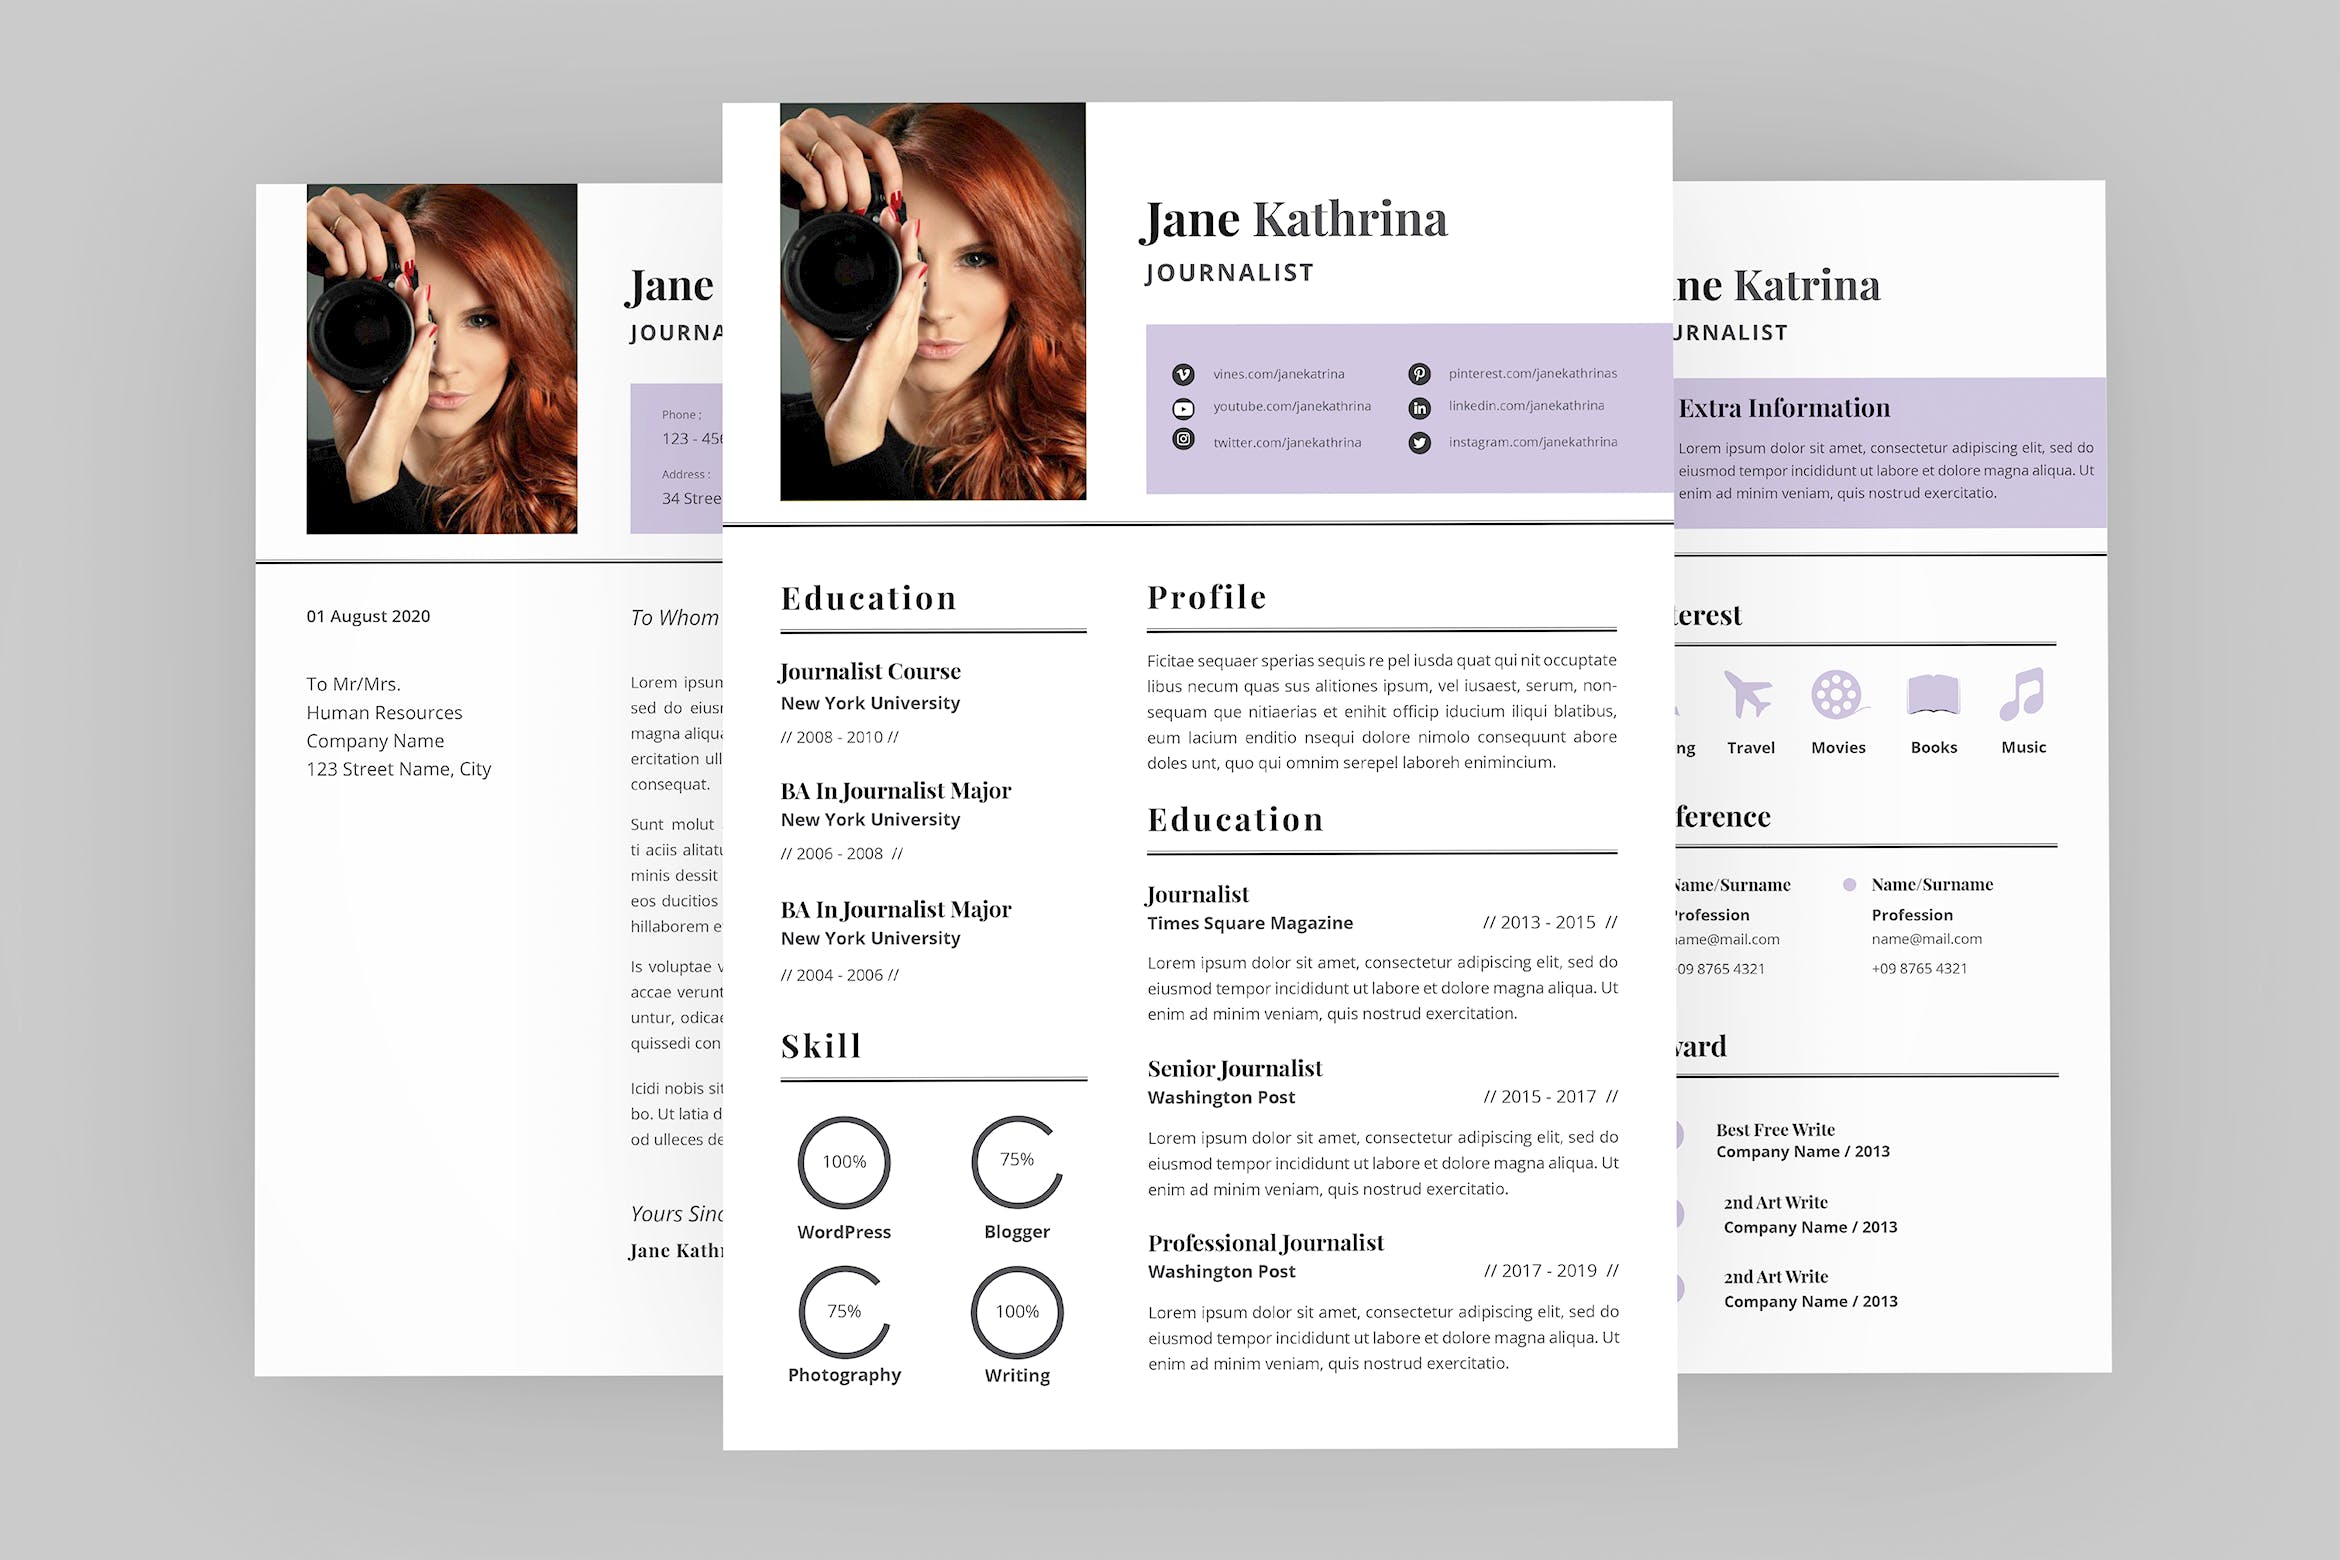 旅行记者个人电子非凡图库精选简历模板 Jane Journalist Resume Designer插图